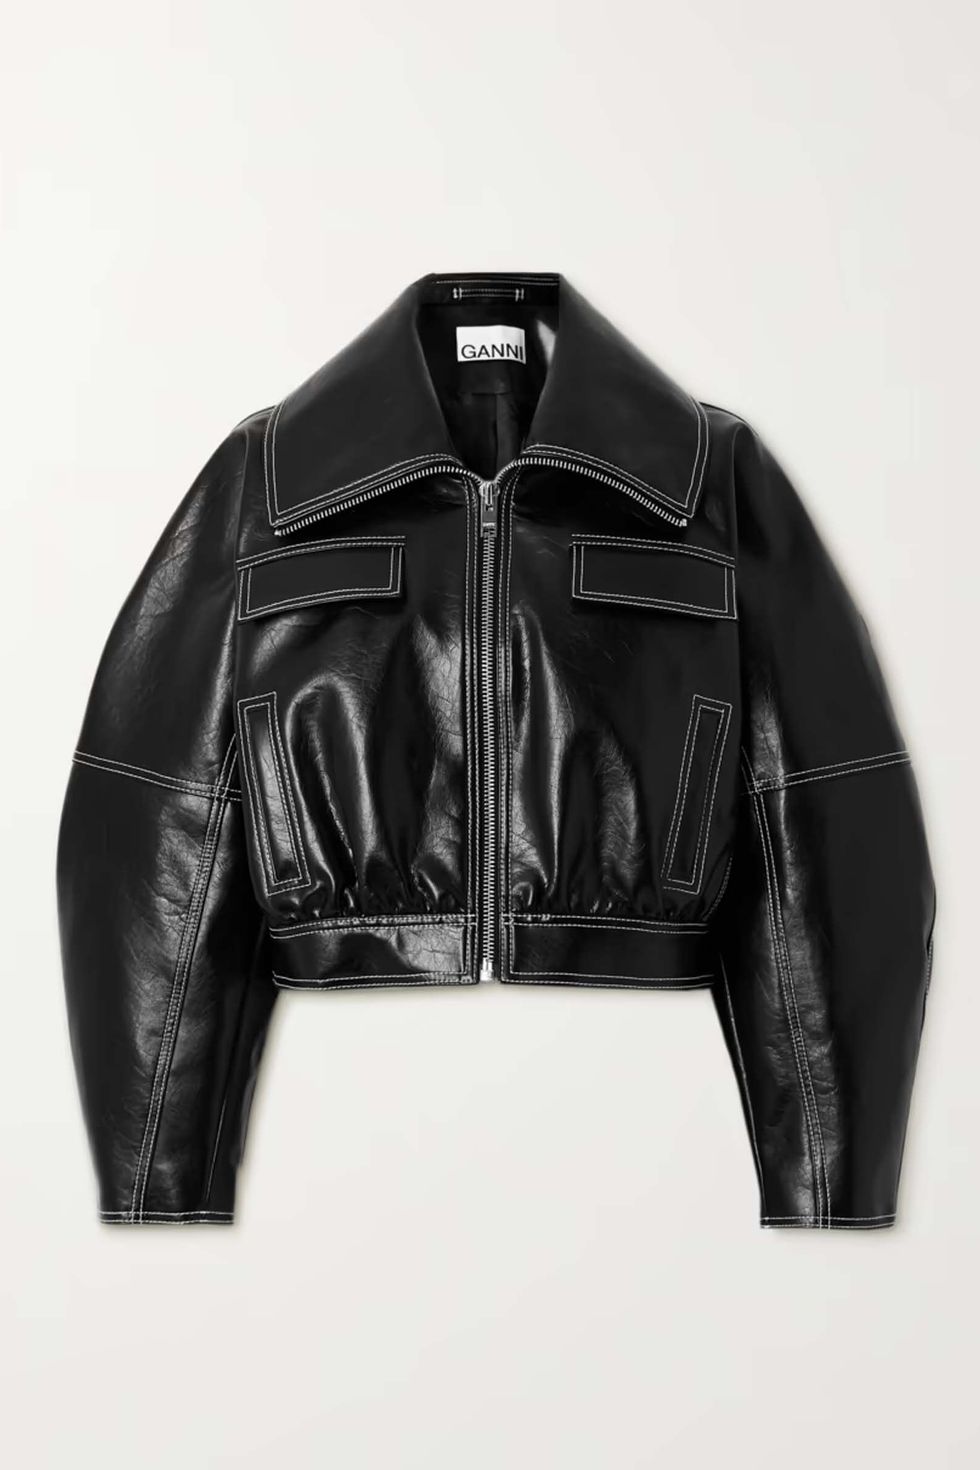 1710865182 Best Leather Jacket Ganni 65f9badbce6b0 ?crop=0.889xw 1.00xh;0.0641xw,0&resize=980 *